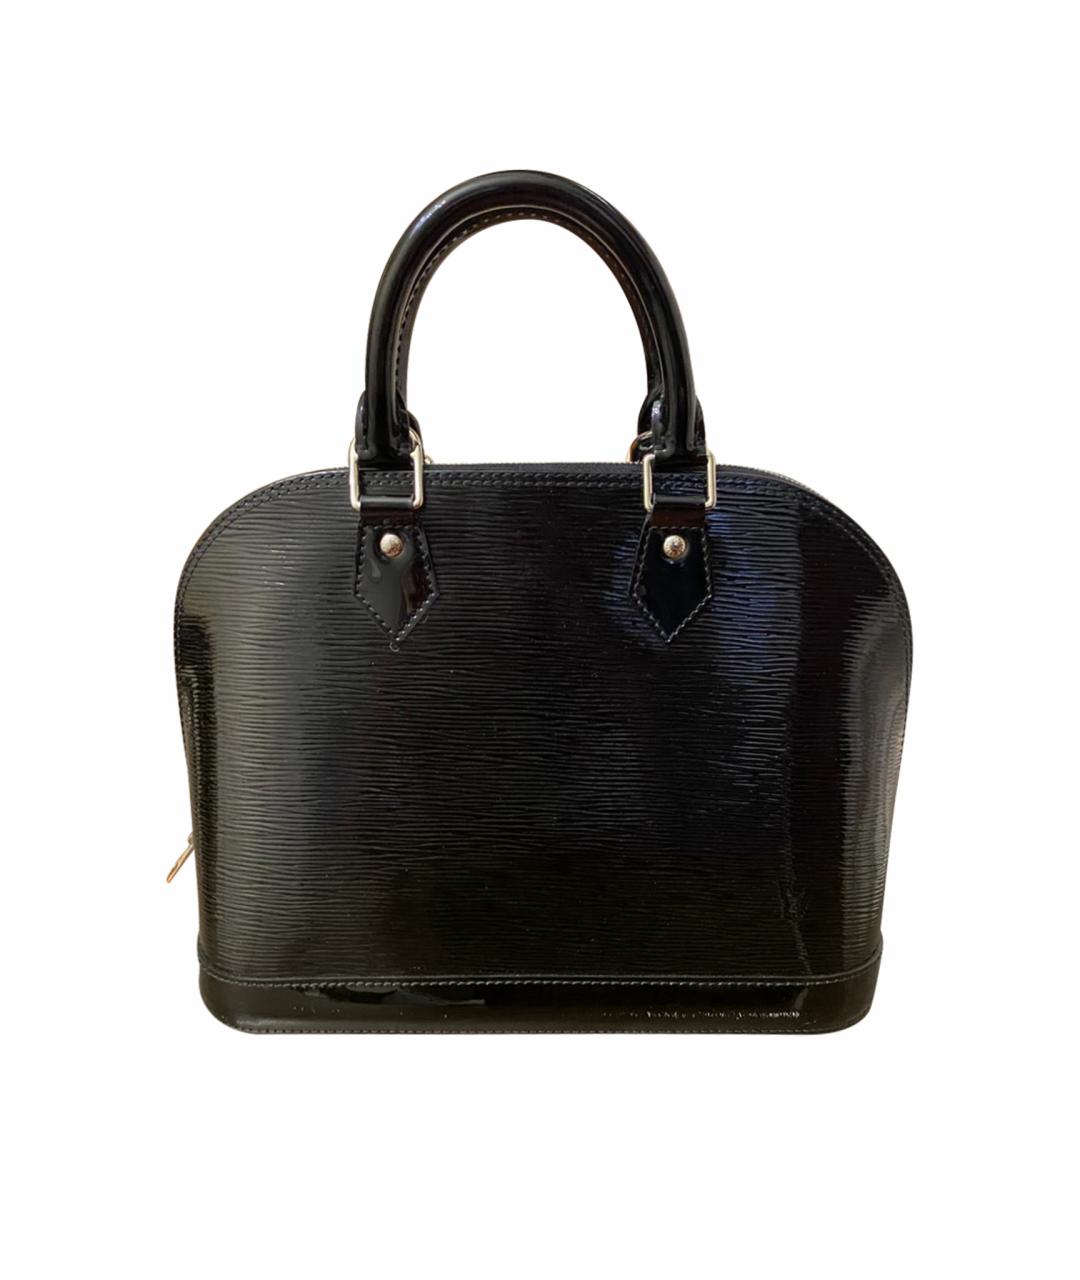 LOUIS VUITTON PRE-OWNED Черная сумка с короткими ручками из лакированной кожи, фото 1